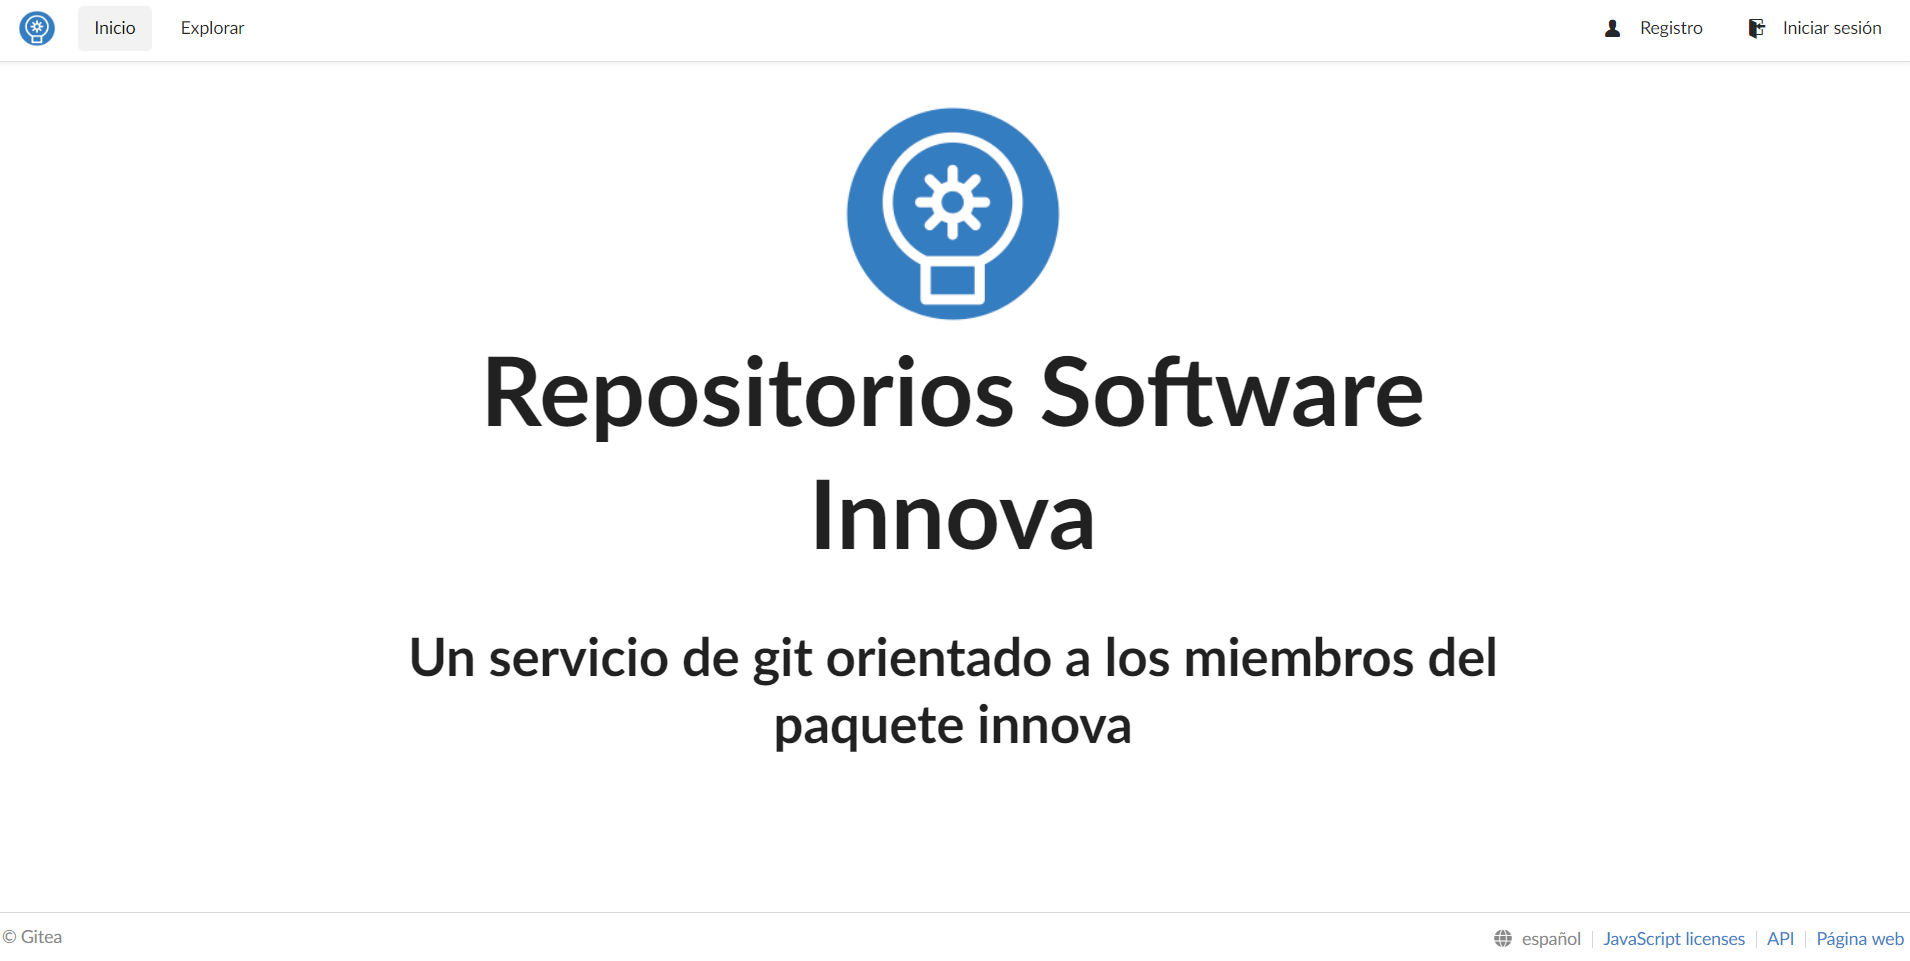 Página inicial de la plataforma Repositorios Software